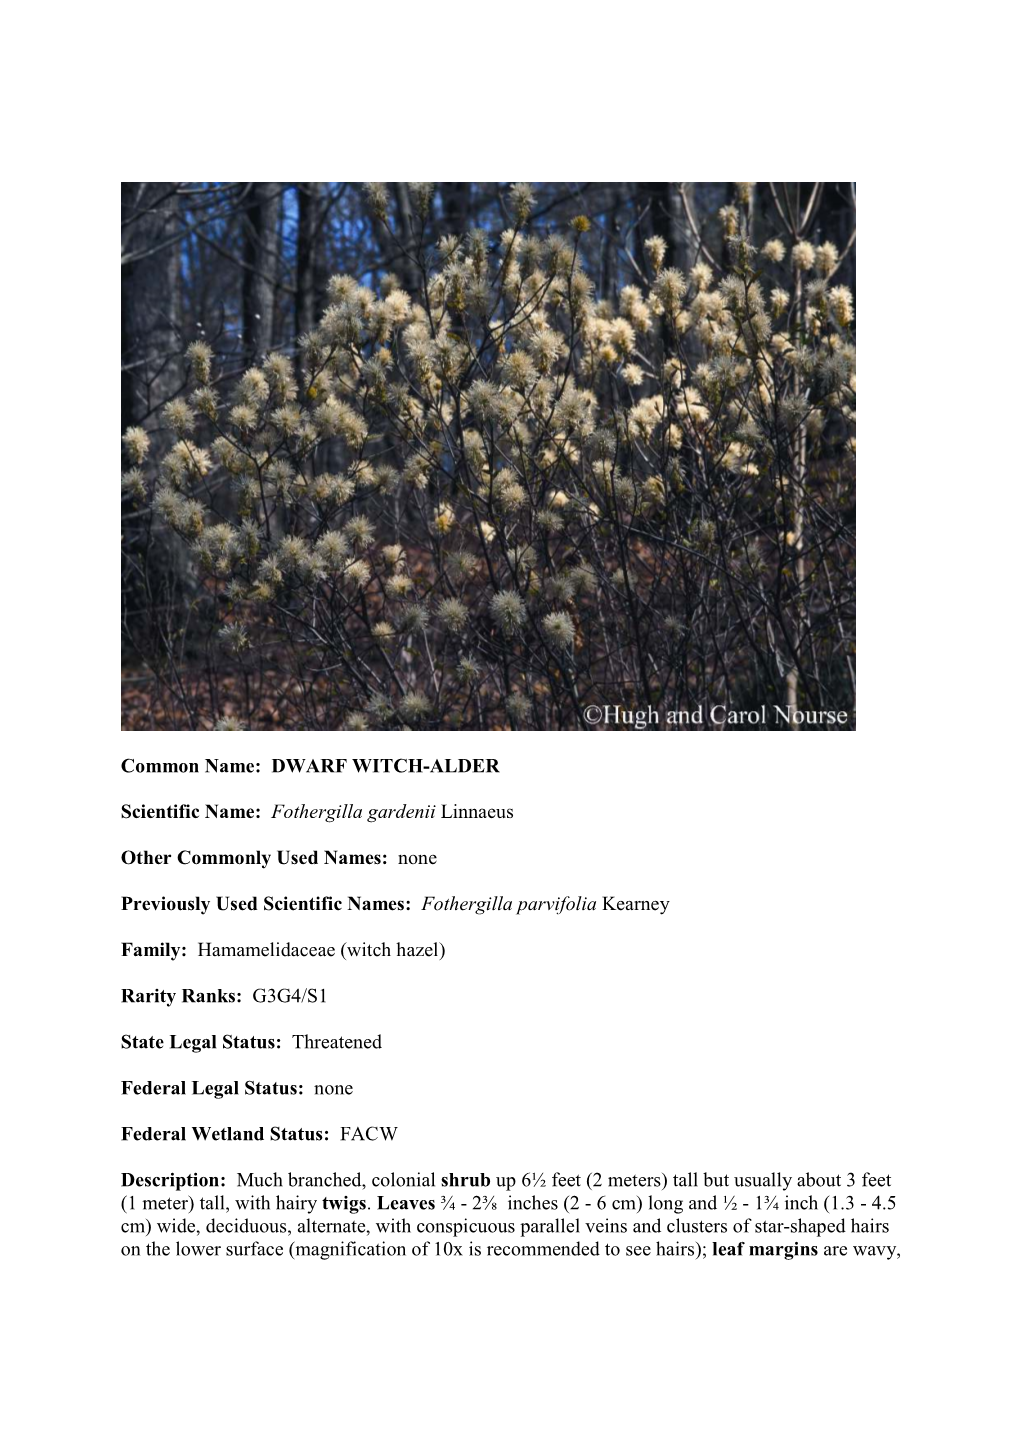 DWARF WITCH-ALDER Scientific Name: Fothergilla Gardenii